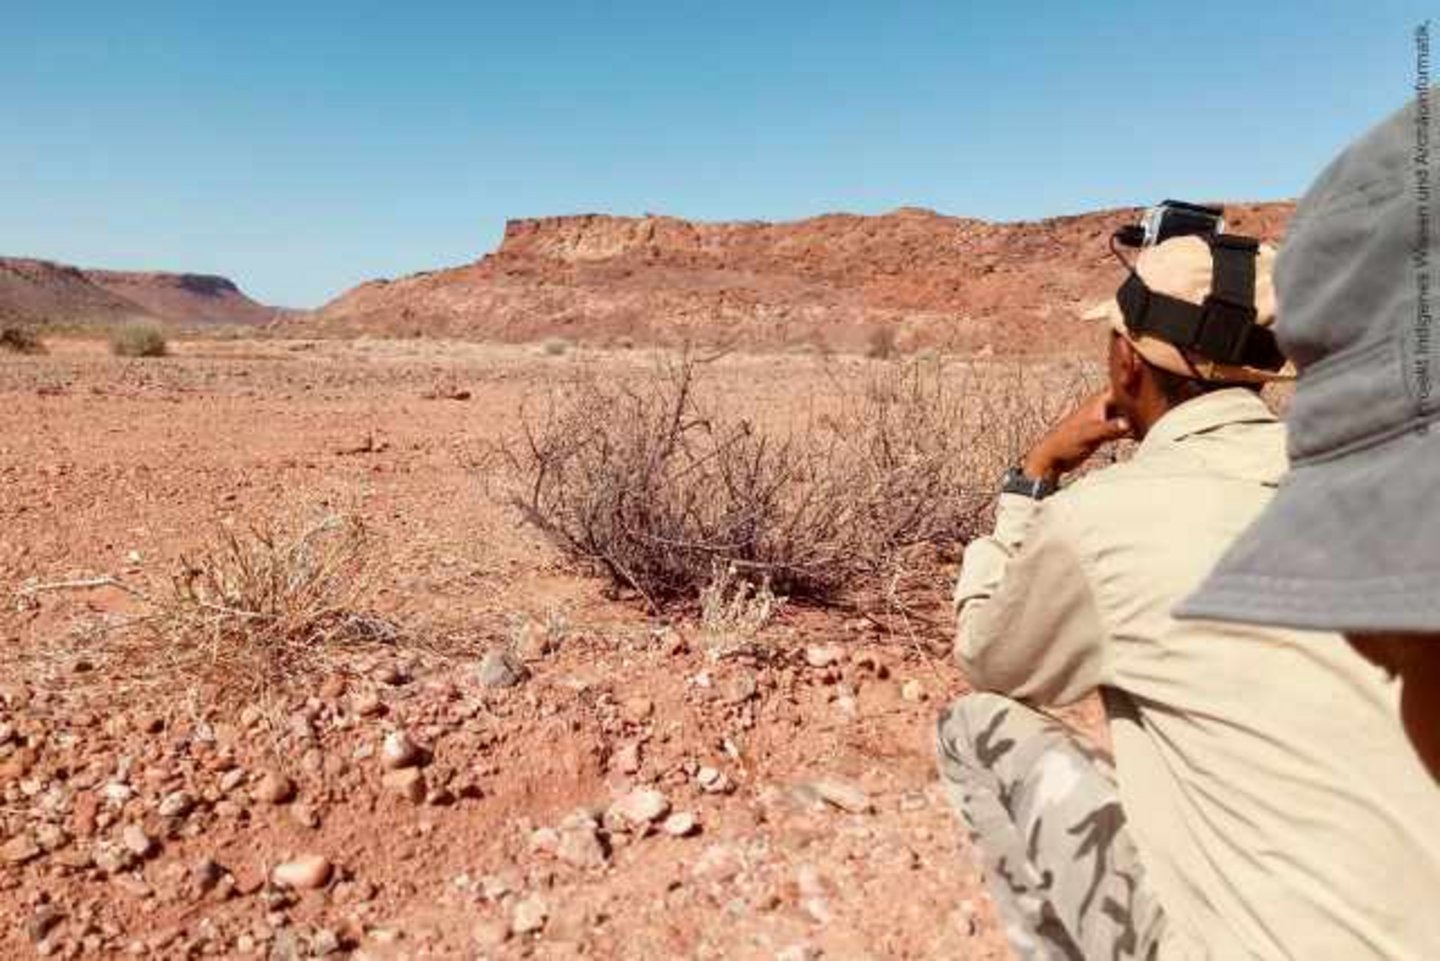 San-Jäger in der Wüste